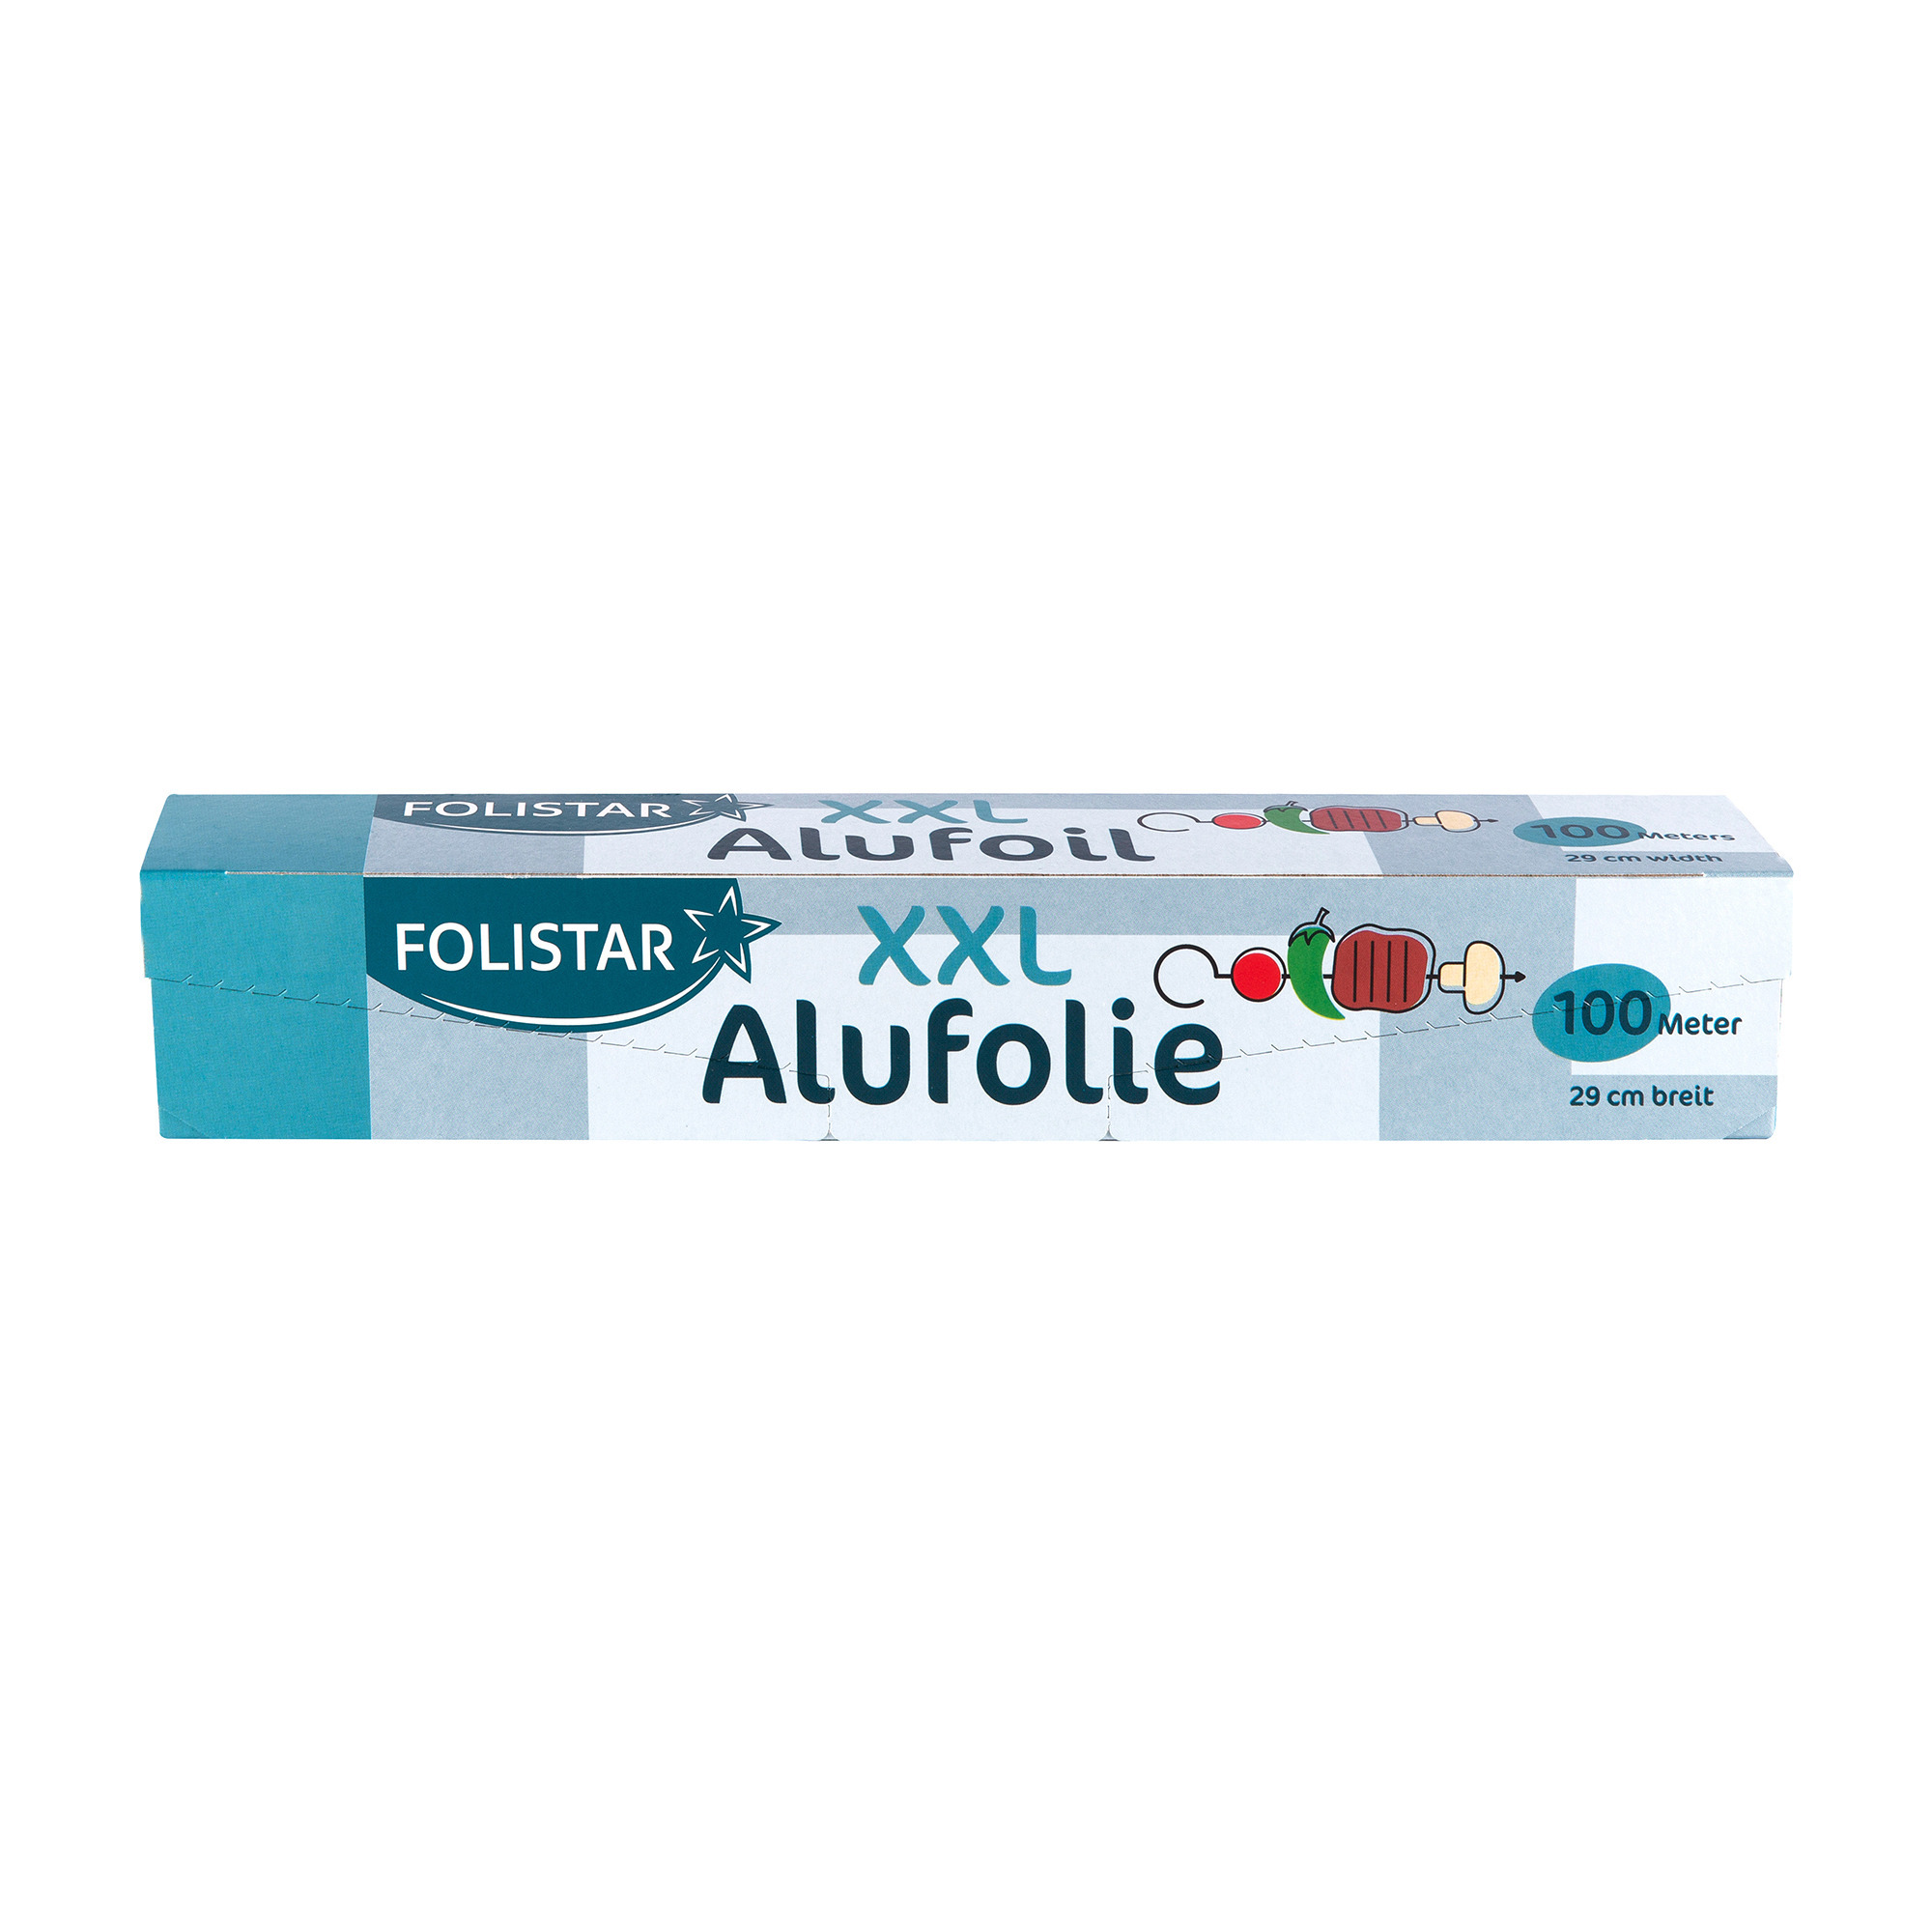 Foilstar Aulfolie Box 100mx29cm